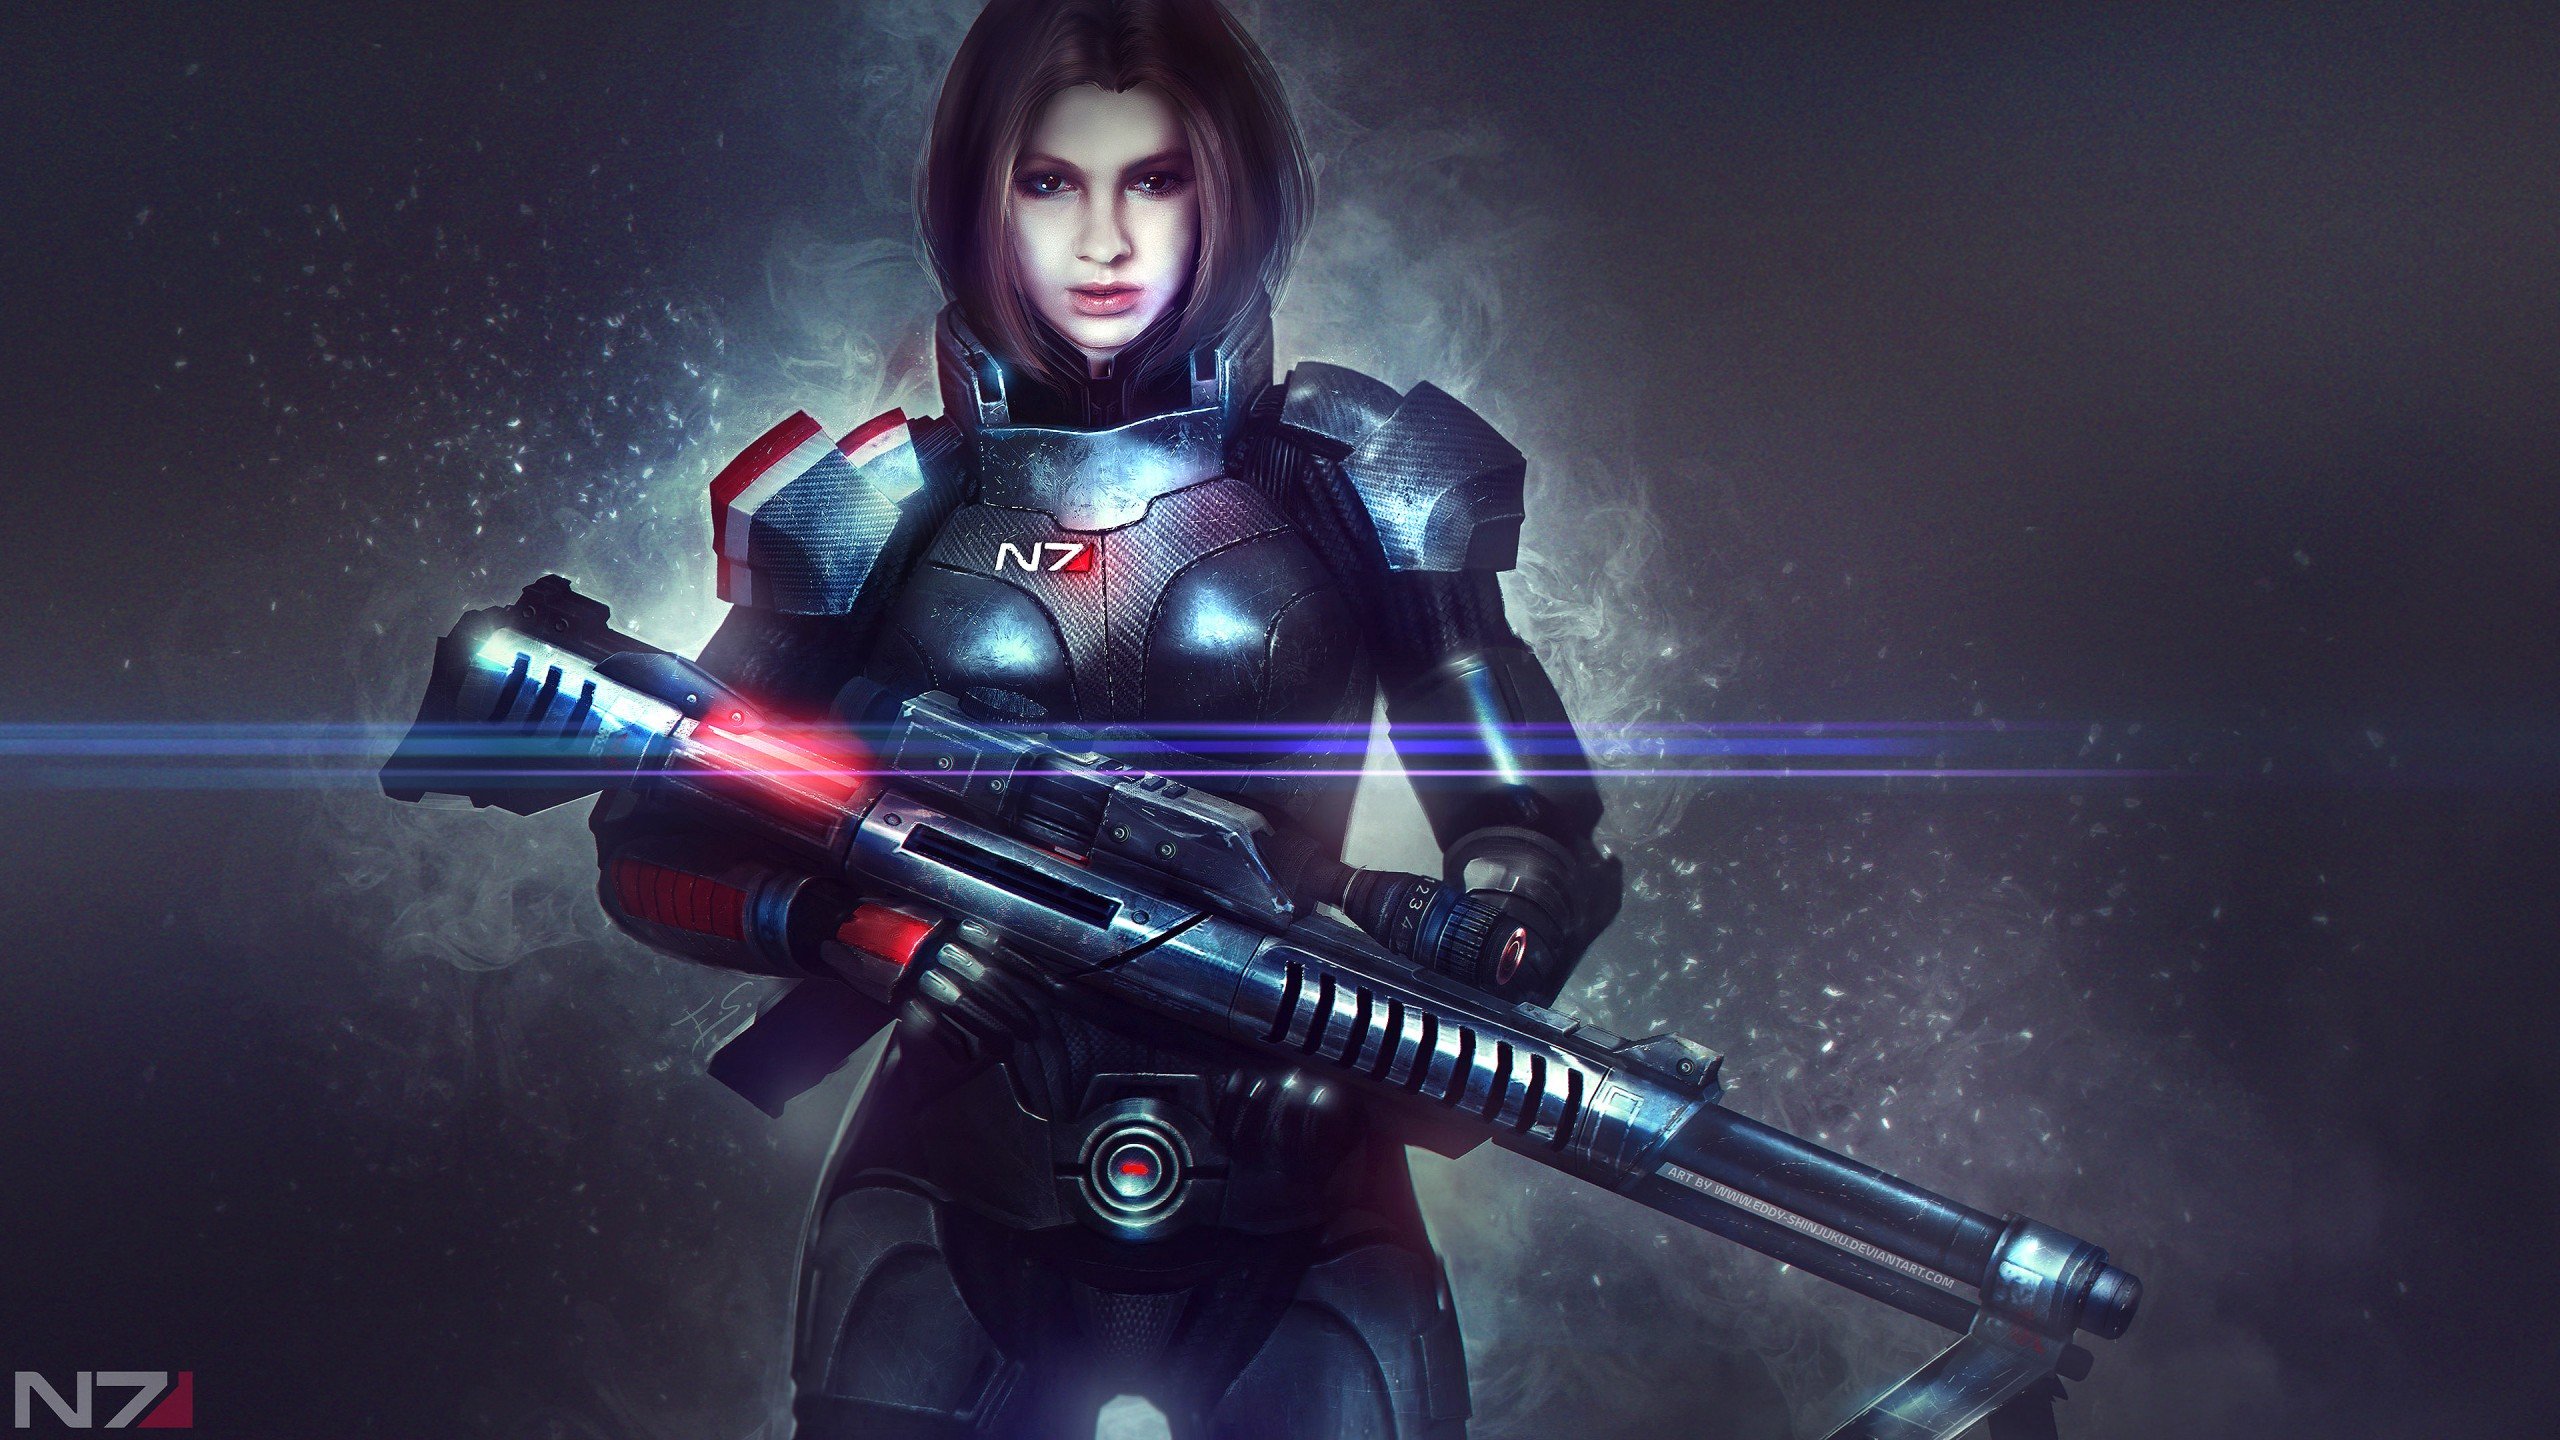 alexandra shepard, Video games, Mass Effect Wallpaper